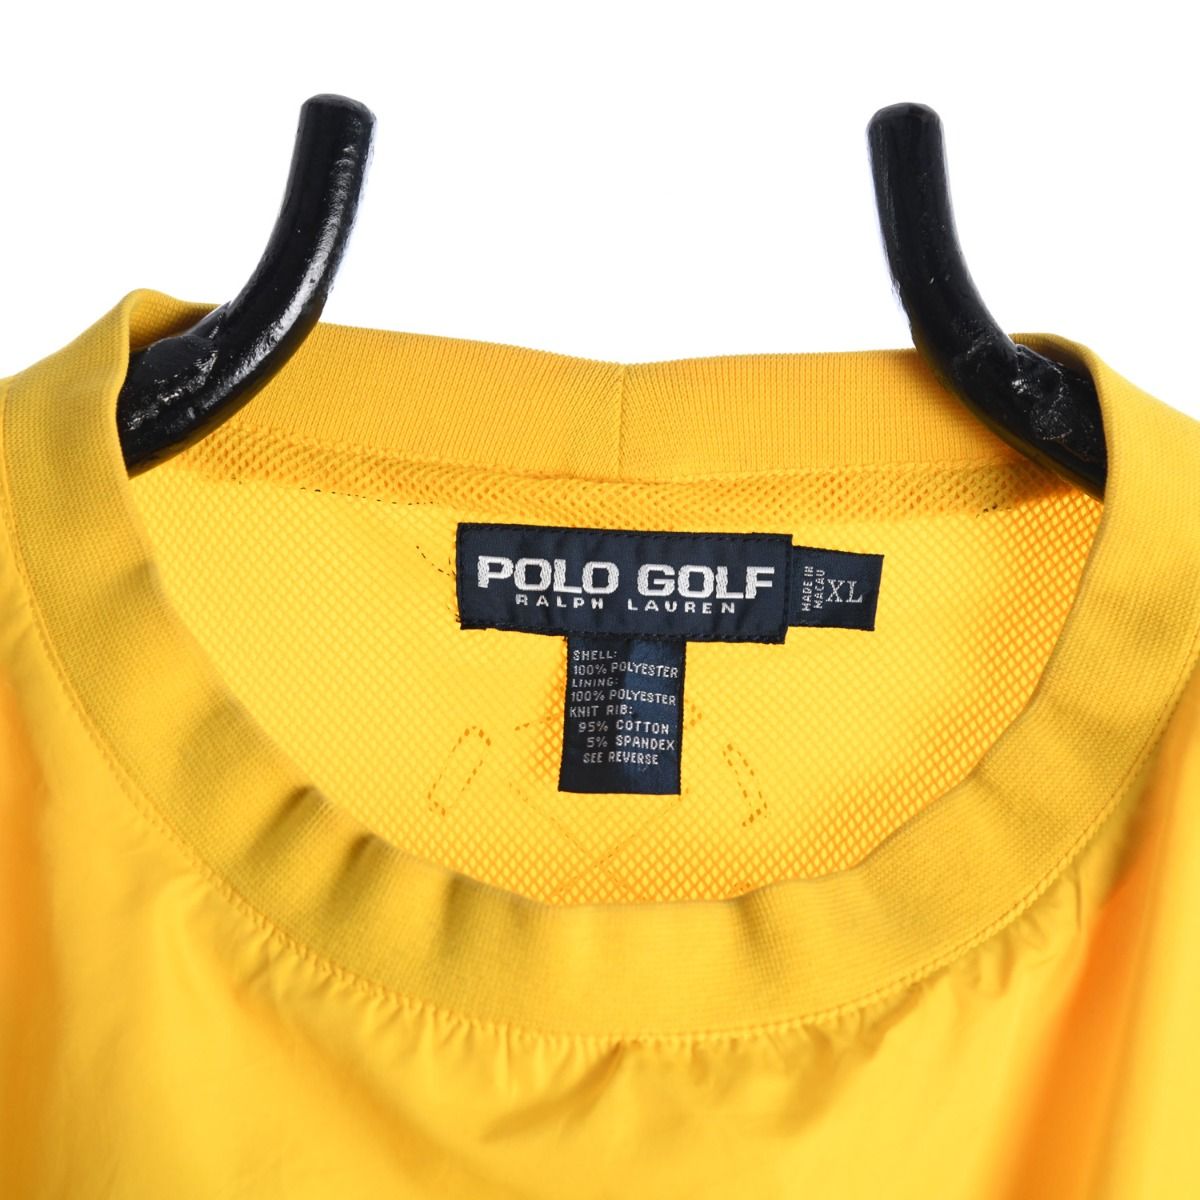 Ralph Lauren Polo Golf Shell Pullover